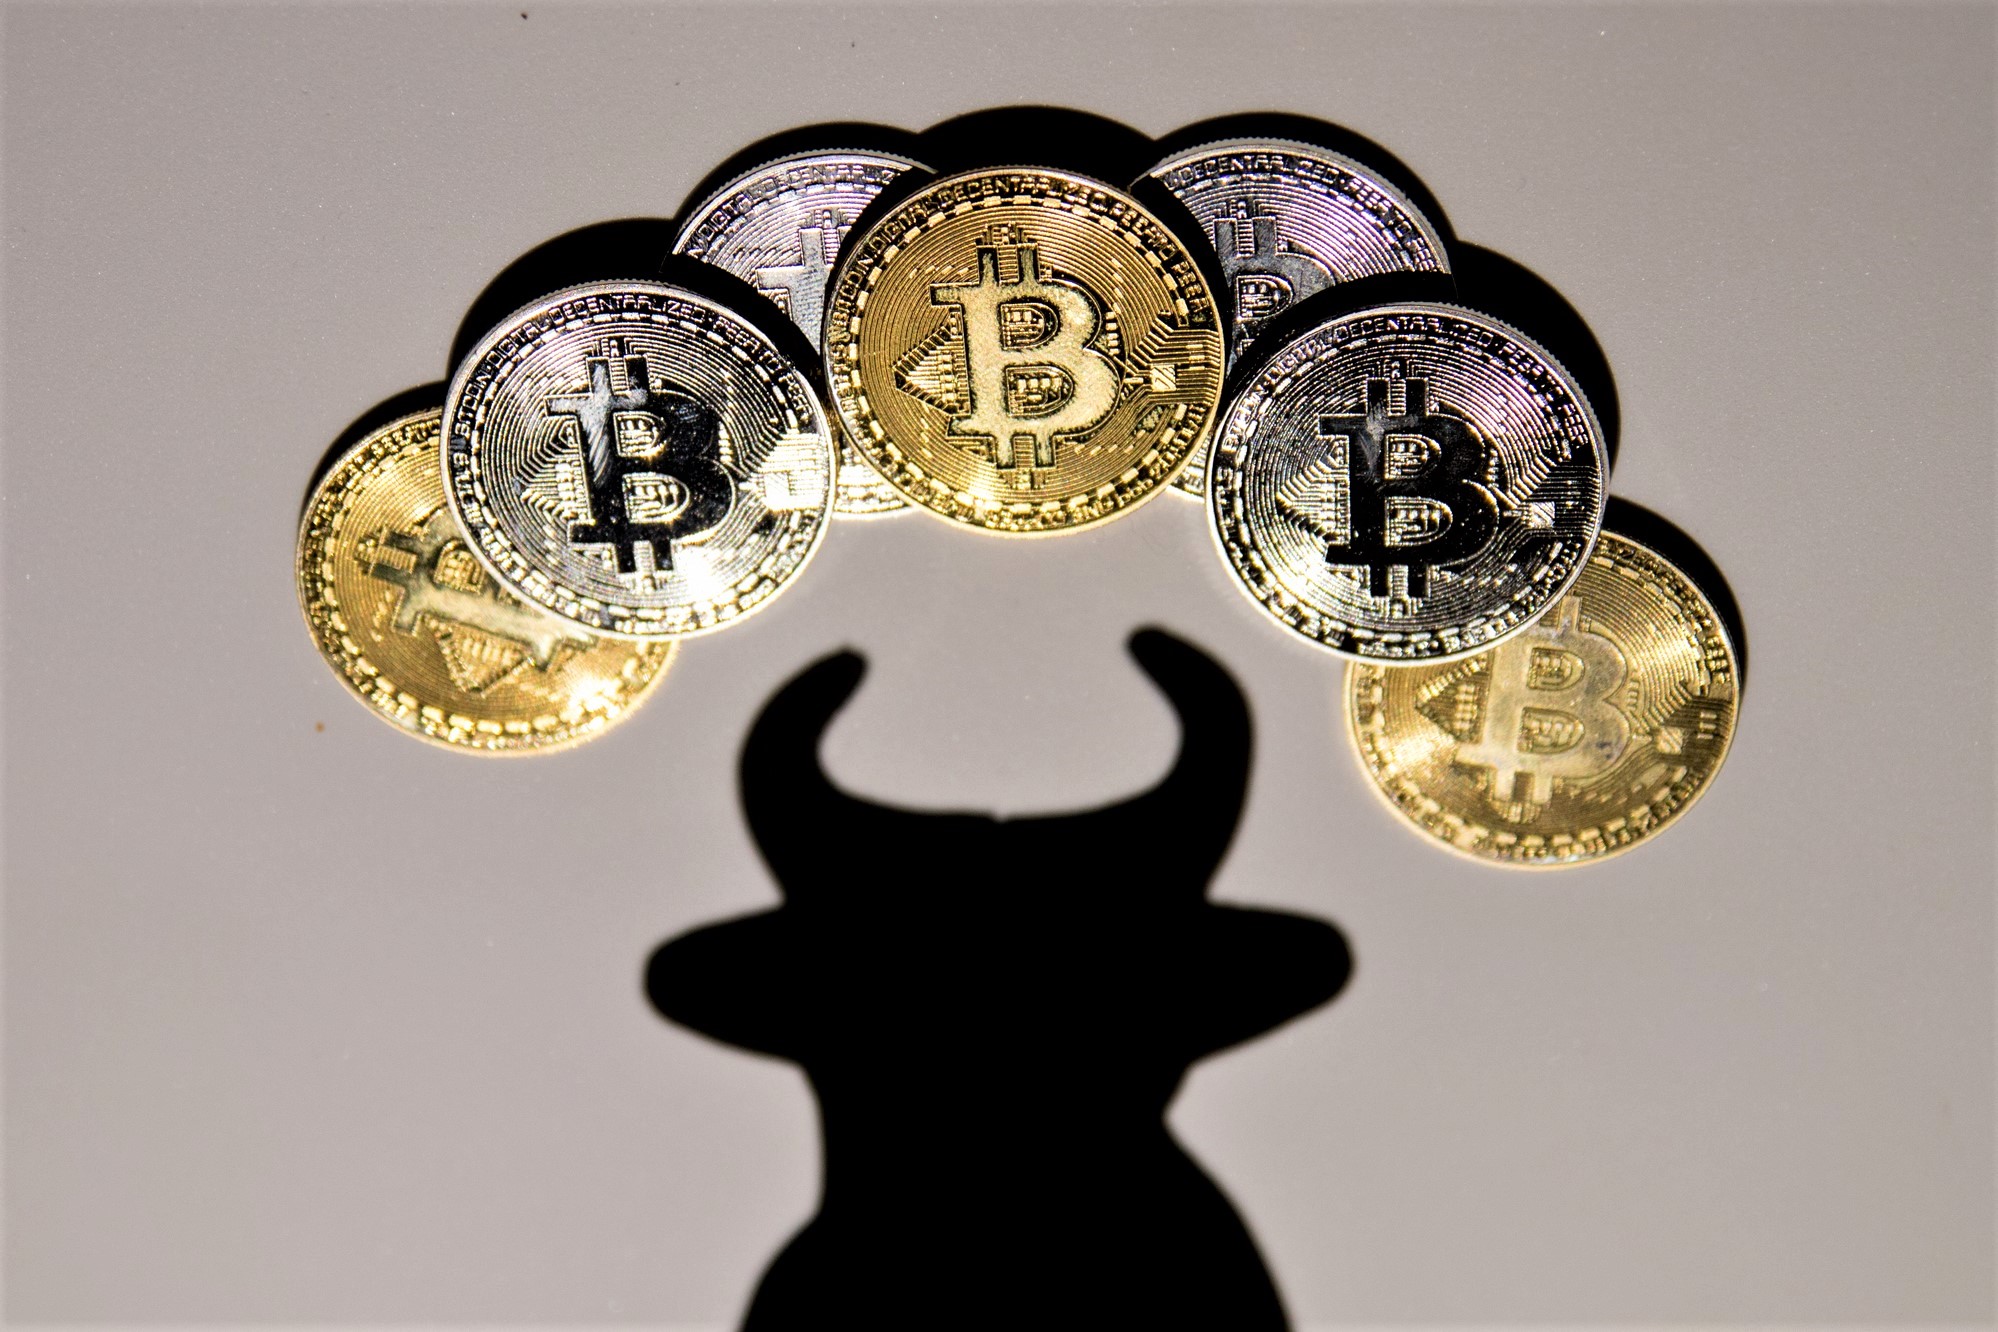 bitcoin bull